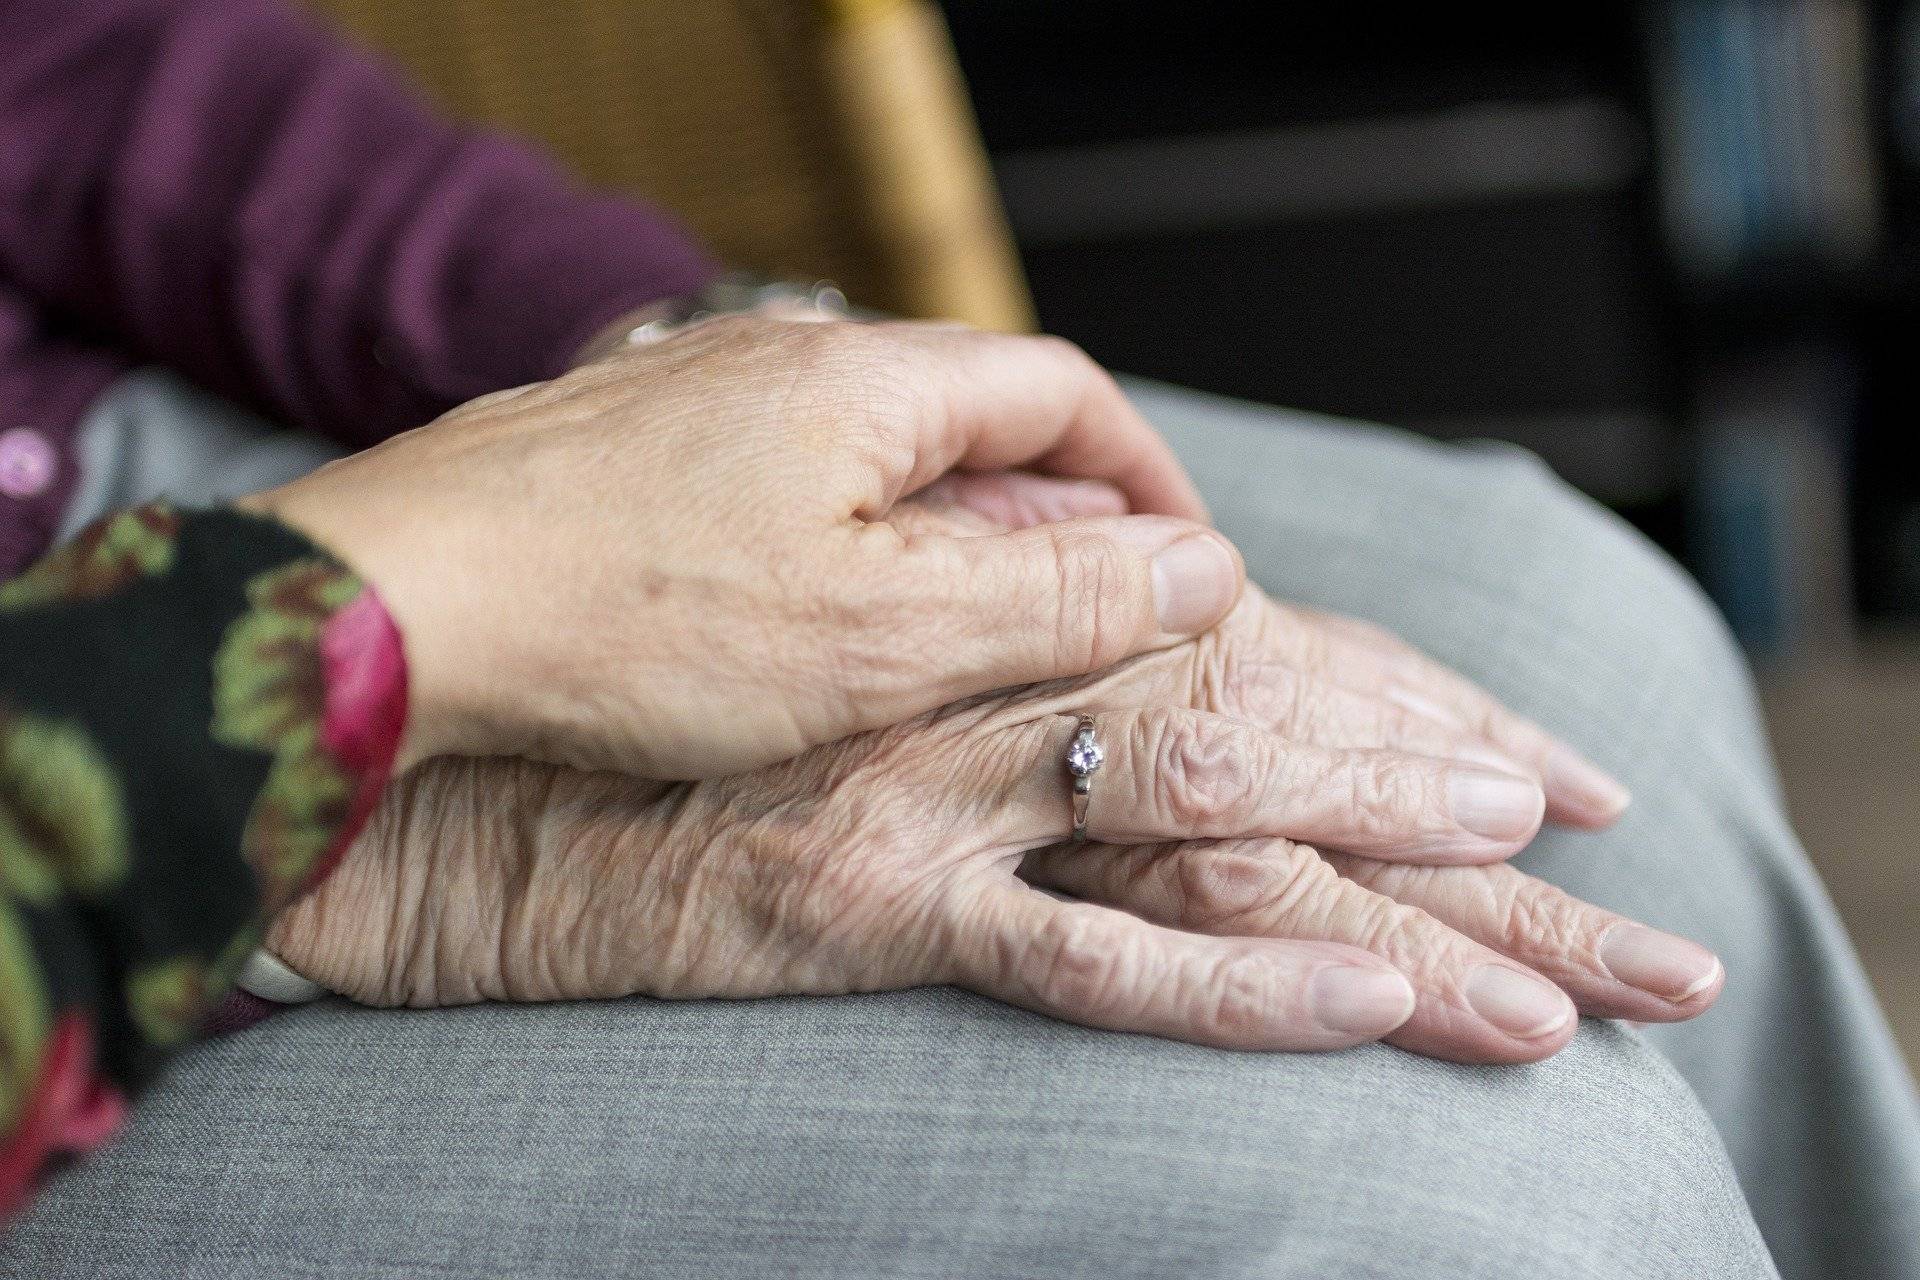 Allgemeinverfügung tritt am Dienstag in Kraft: Kreis begrenzt Besuche in Alten- und Pflegeeinrichtungen